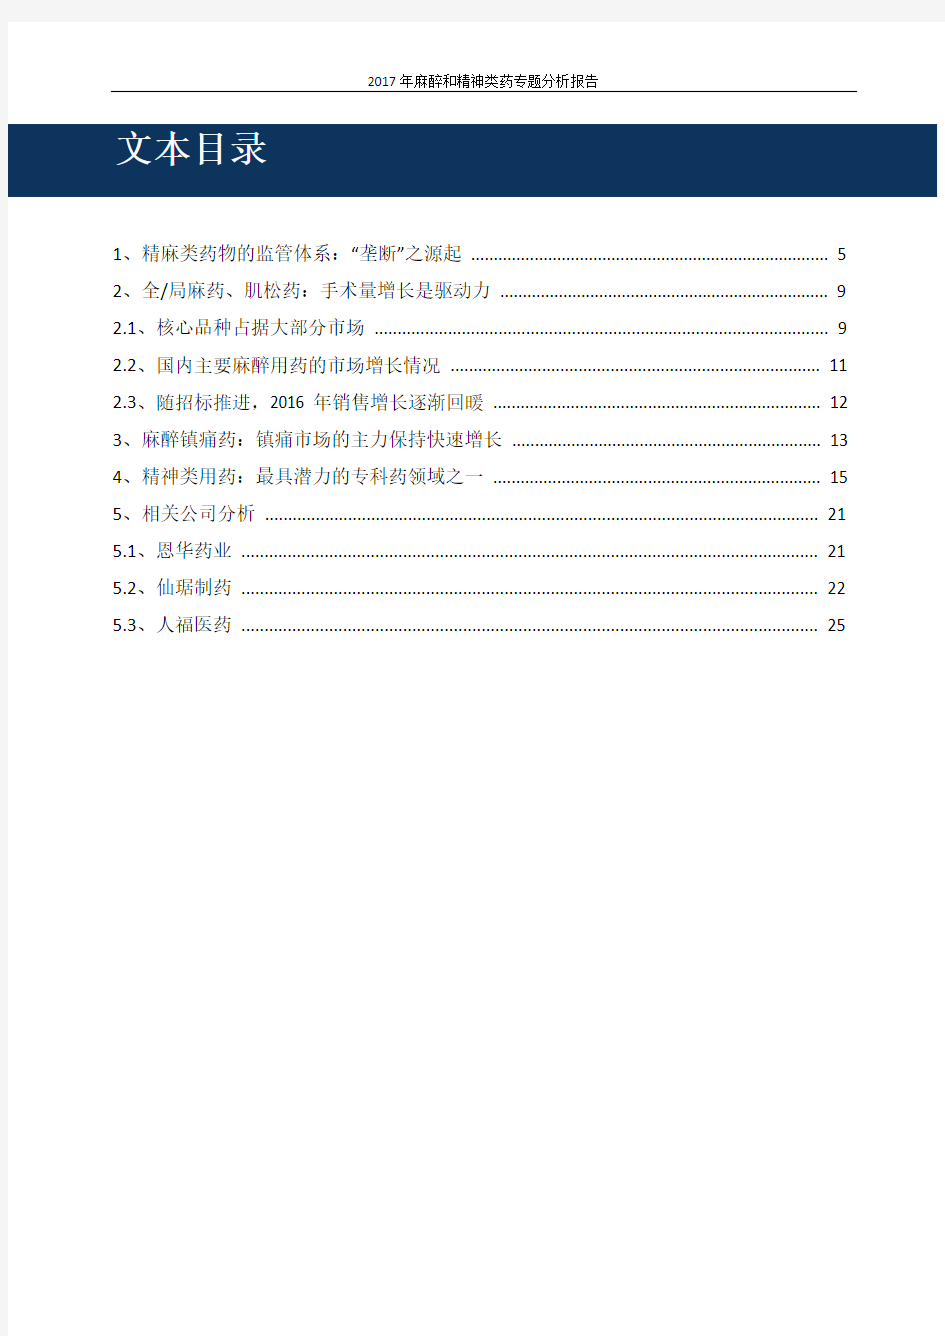 2017年最新版中国麻醉和精神类药专题分析报告